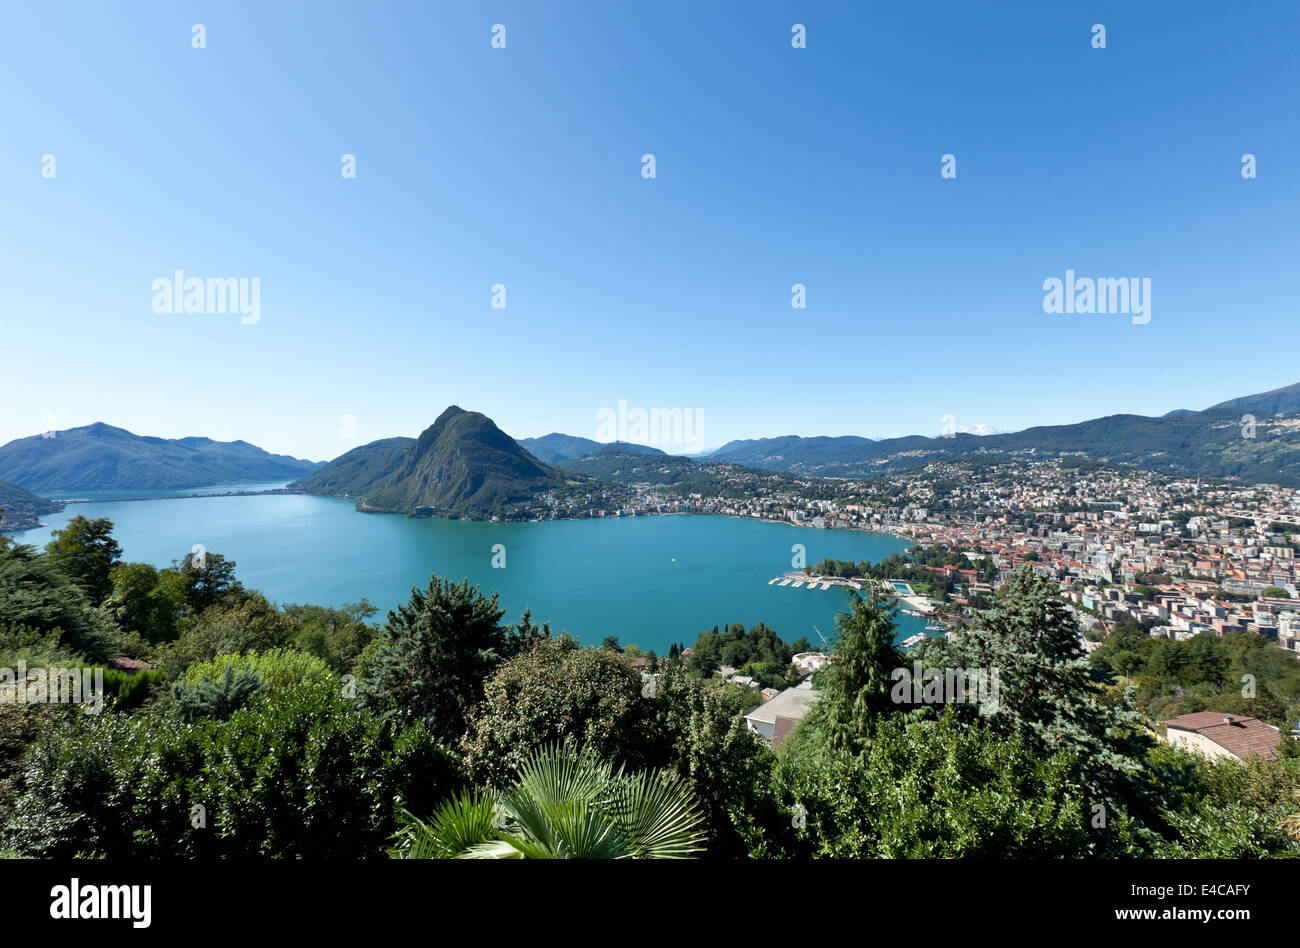 Le lac de Lugano, vue panoramique depuis le haut, Suisse Banque D'Images